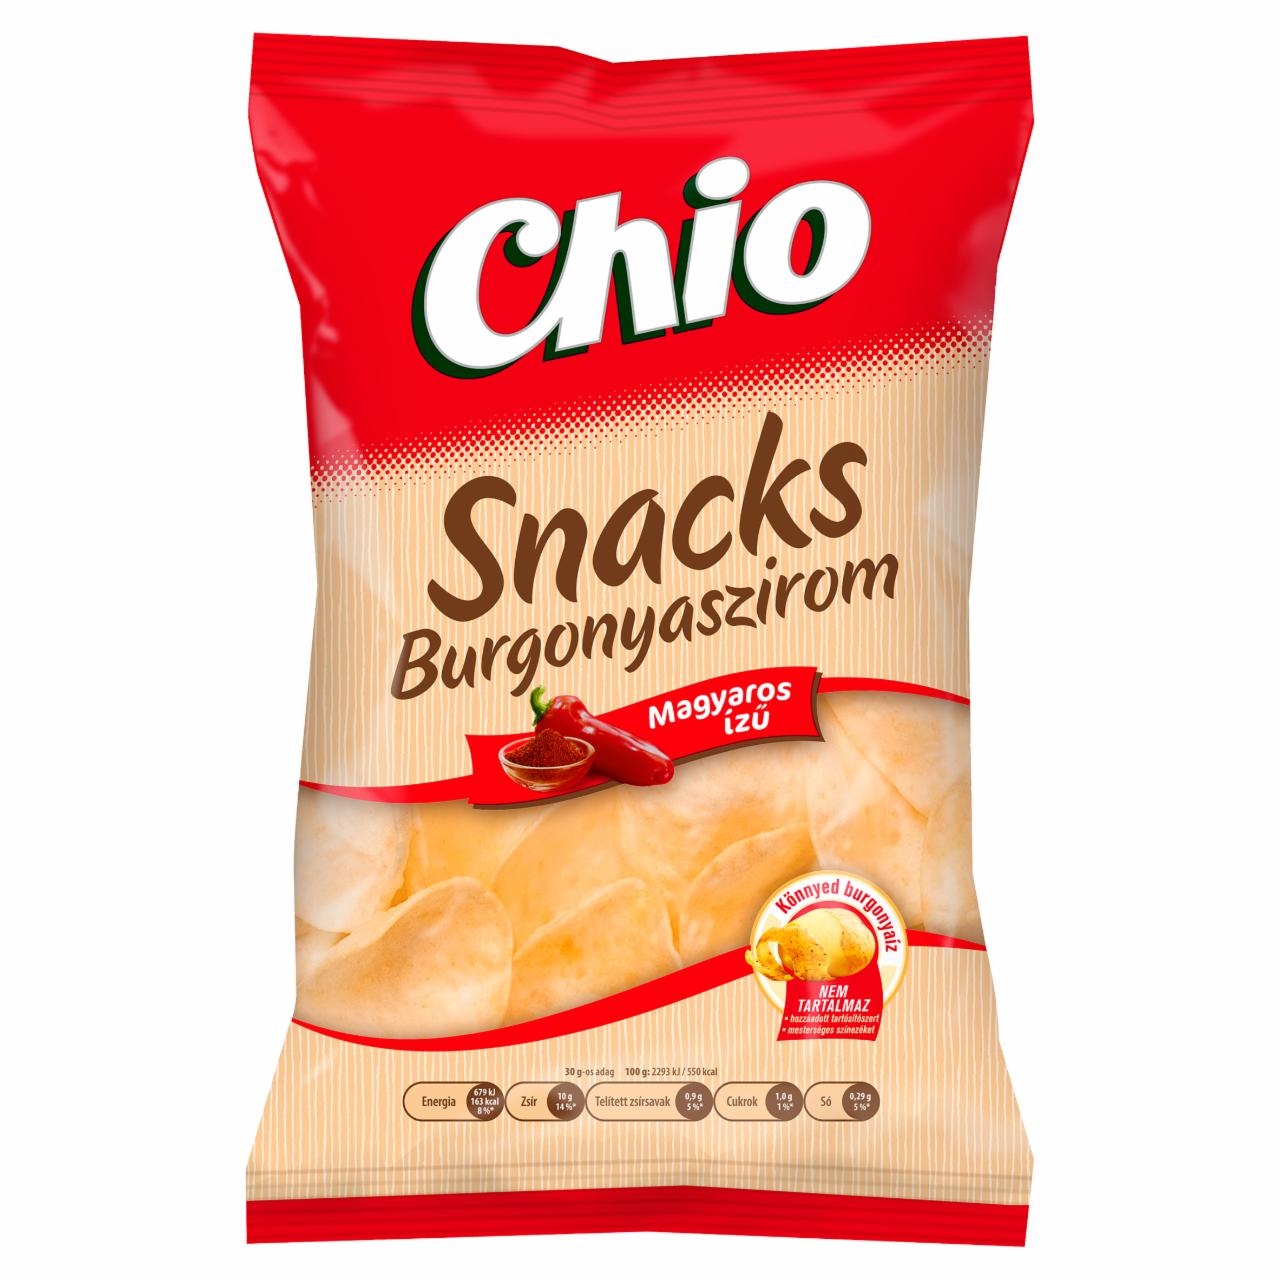 Képek - Chio Snacks magyaros ízű hagyományos burgonyaszirom 40 g